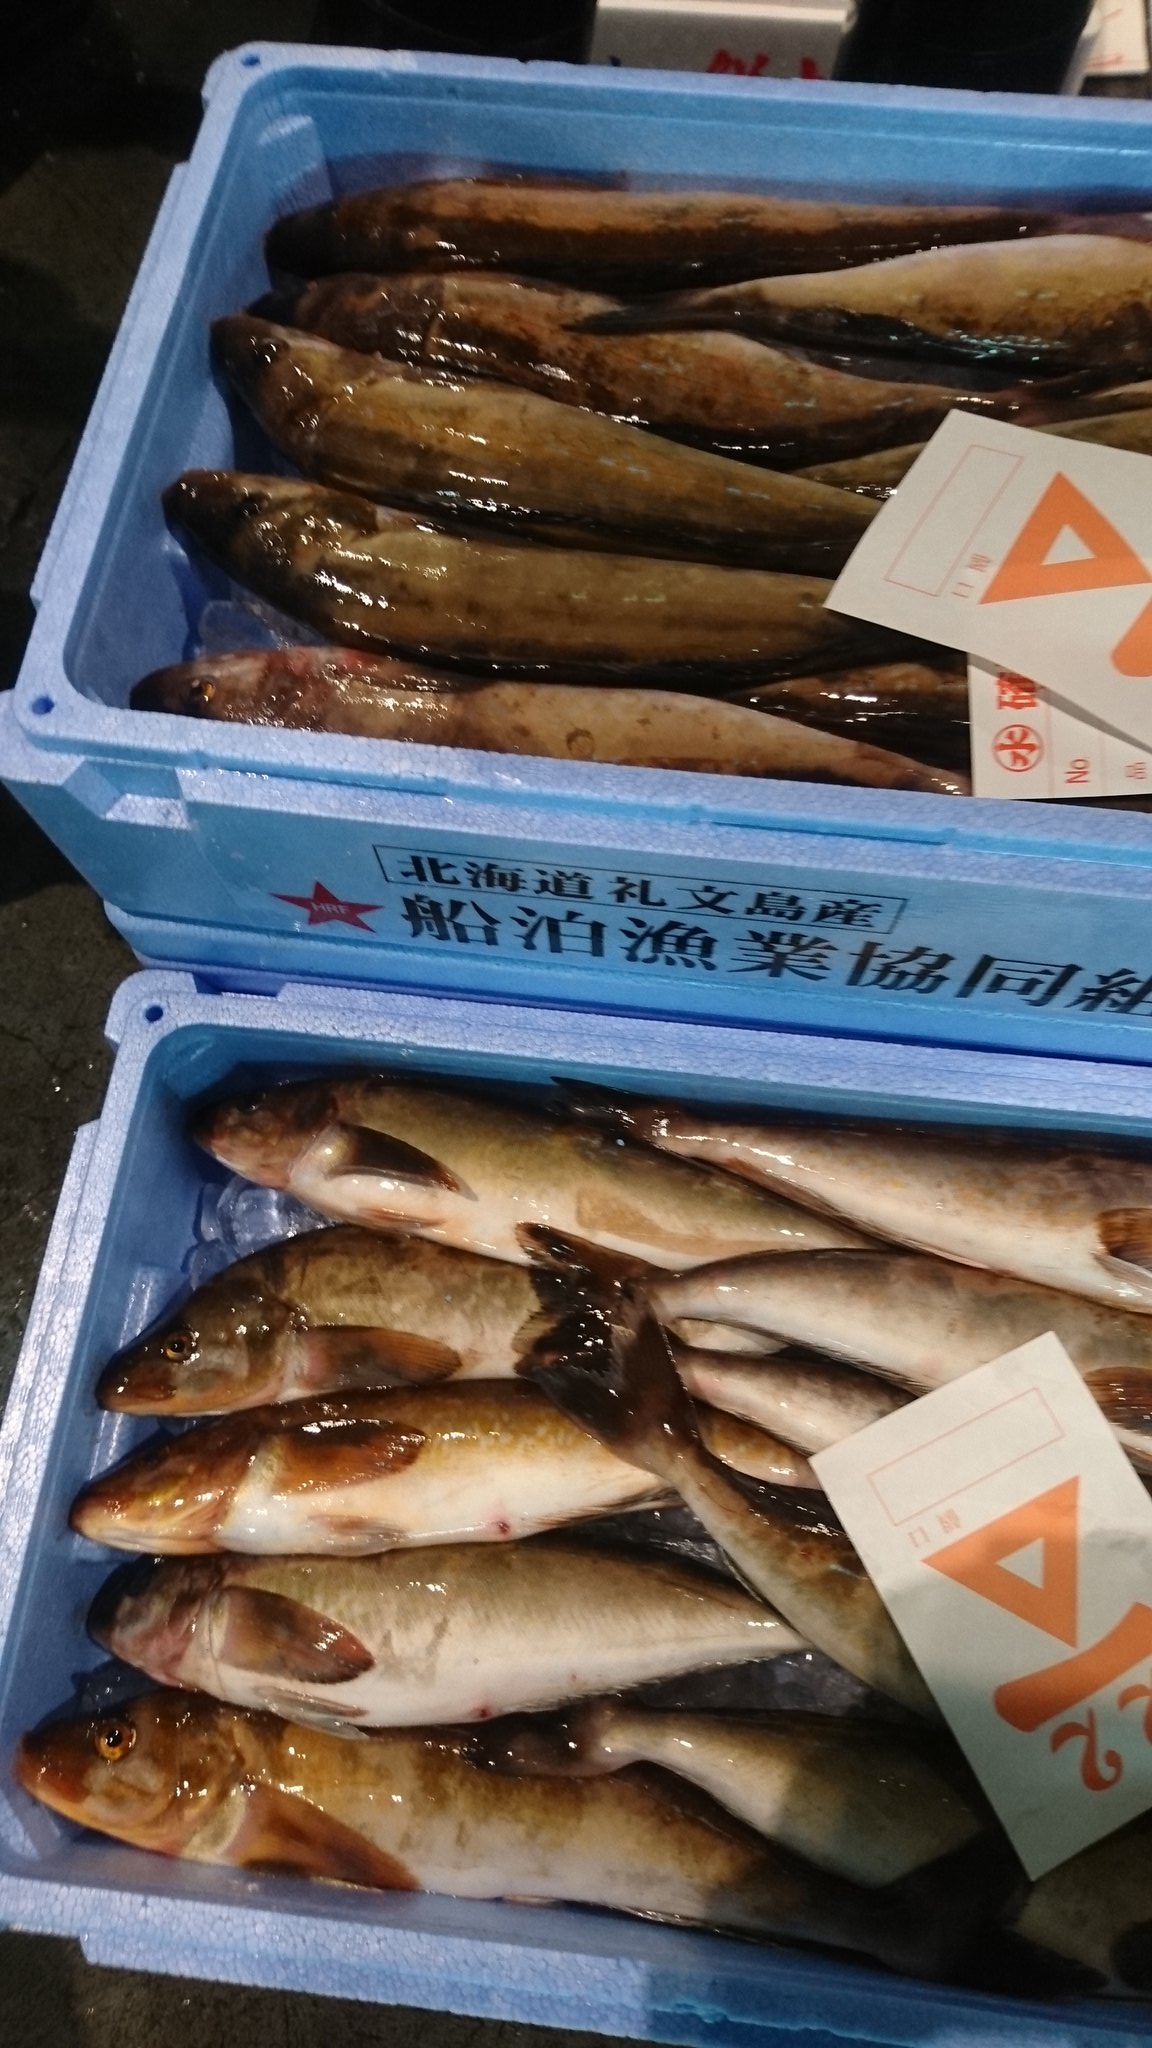 サミットバイヤーなう Summitstore Co 鮮魚バイヤーのｓです 今日は真ほっけの食べ方をご紹介します 北海道では生のほっけは塩焼きよりも圧倒的にフライで食べます アジよりも クセのない白身の魚でとっても美味しい 塩焼きで食べるなら干物が抜群